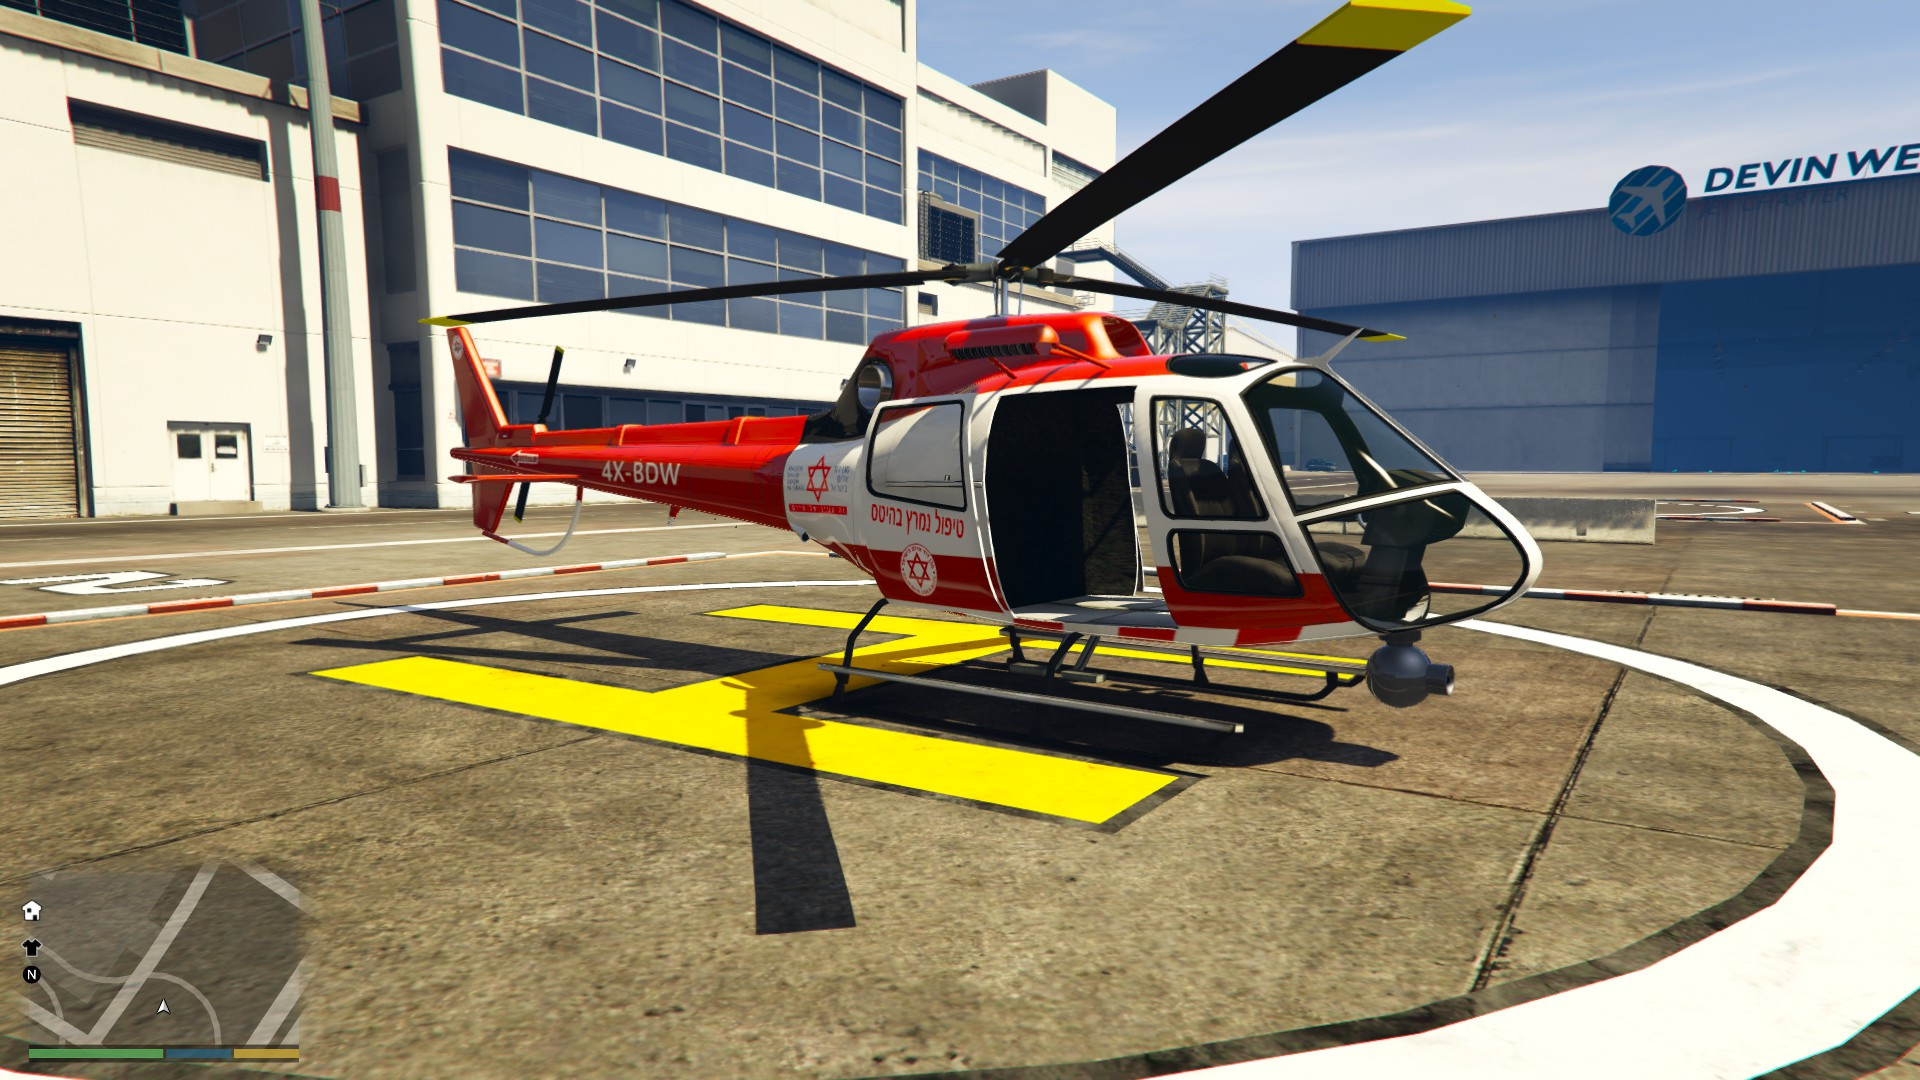 Police Helicopter GTA 5. Медицинский вертолет ГТА 5. Вертолет полиции в ГТА 5. Медицинский вертолет США. Игра гта вертолет